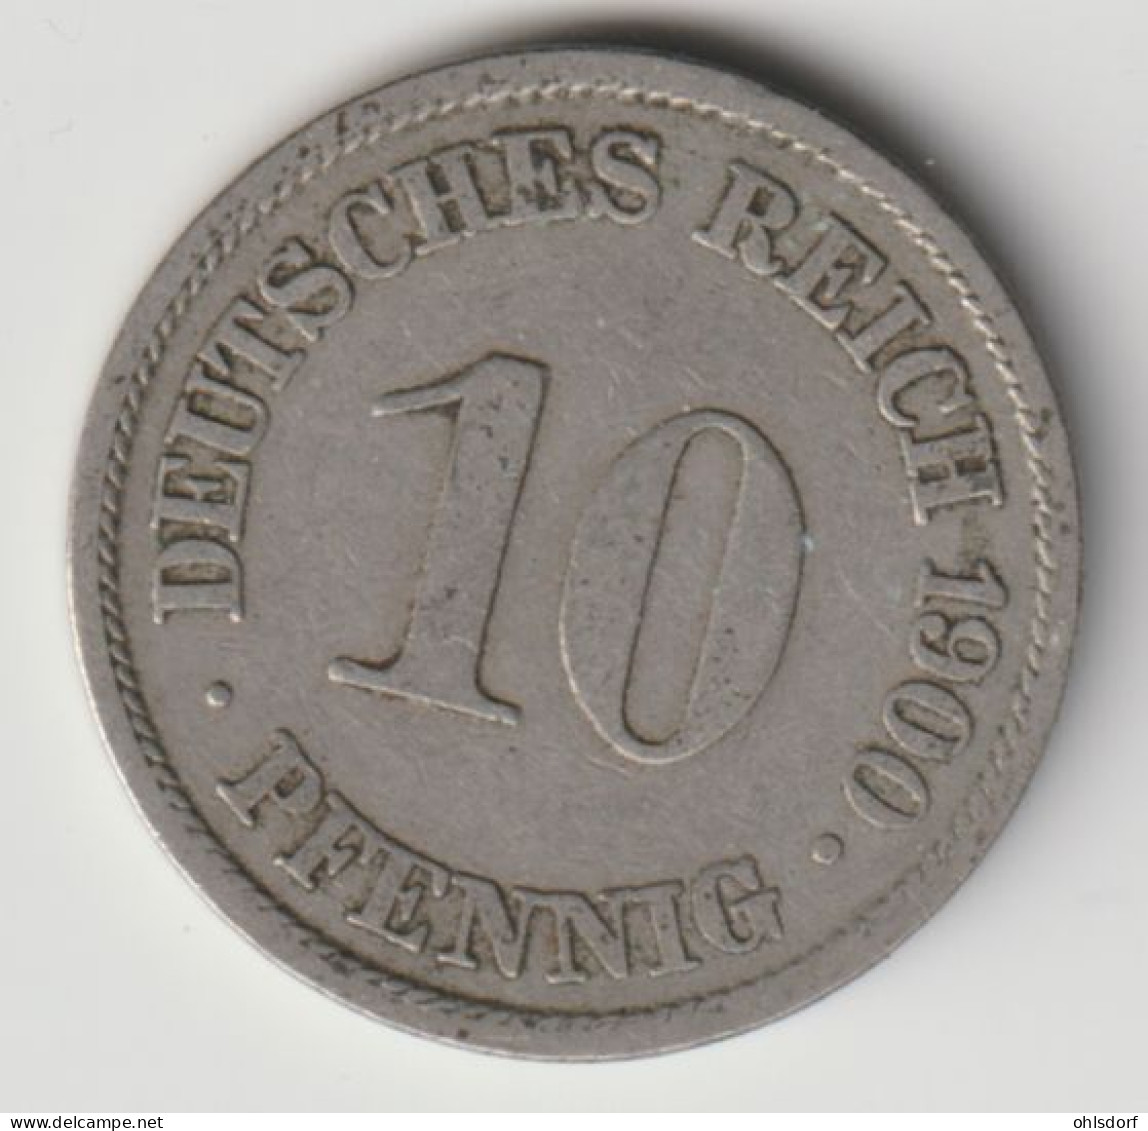 DEUTSCHES REICH 1900 A: 10 Pfennig, KM 12 - 10 Pfennig